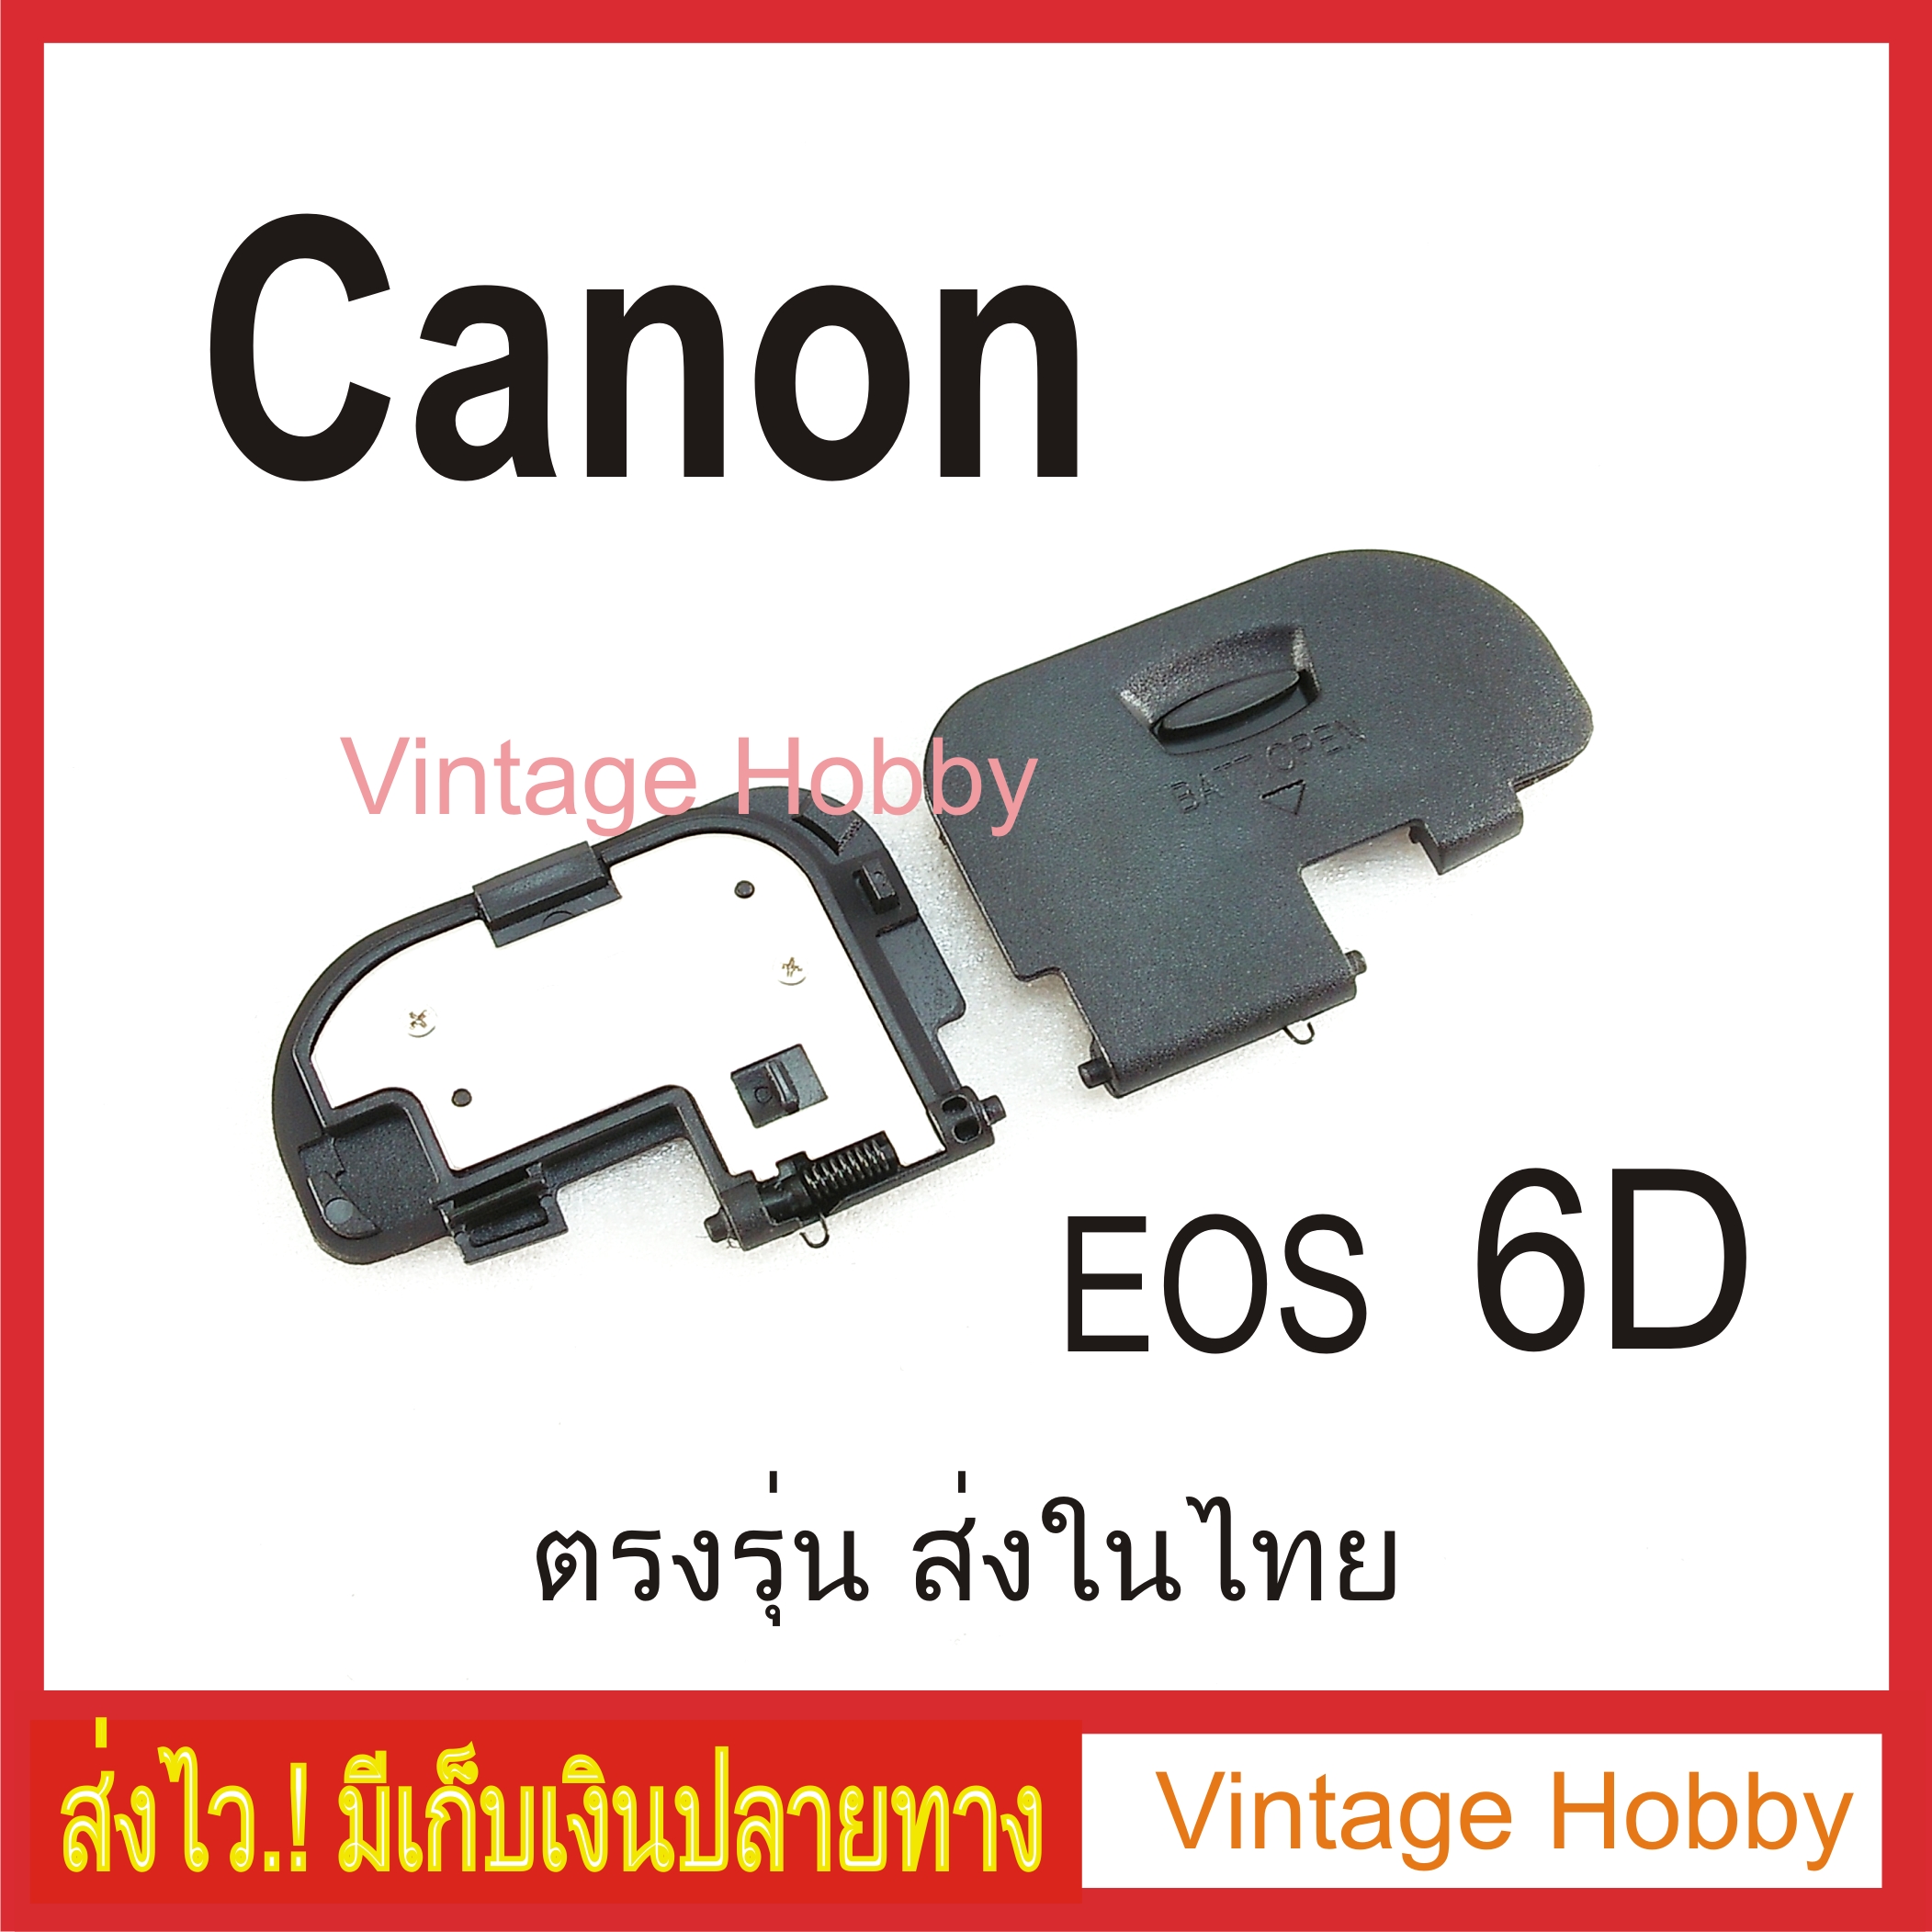 รูปภาพเพิ่มเติมเกี่ยวกับ ฝาปิดแบต กล้อง Canon EOS 6D